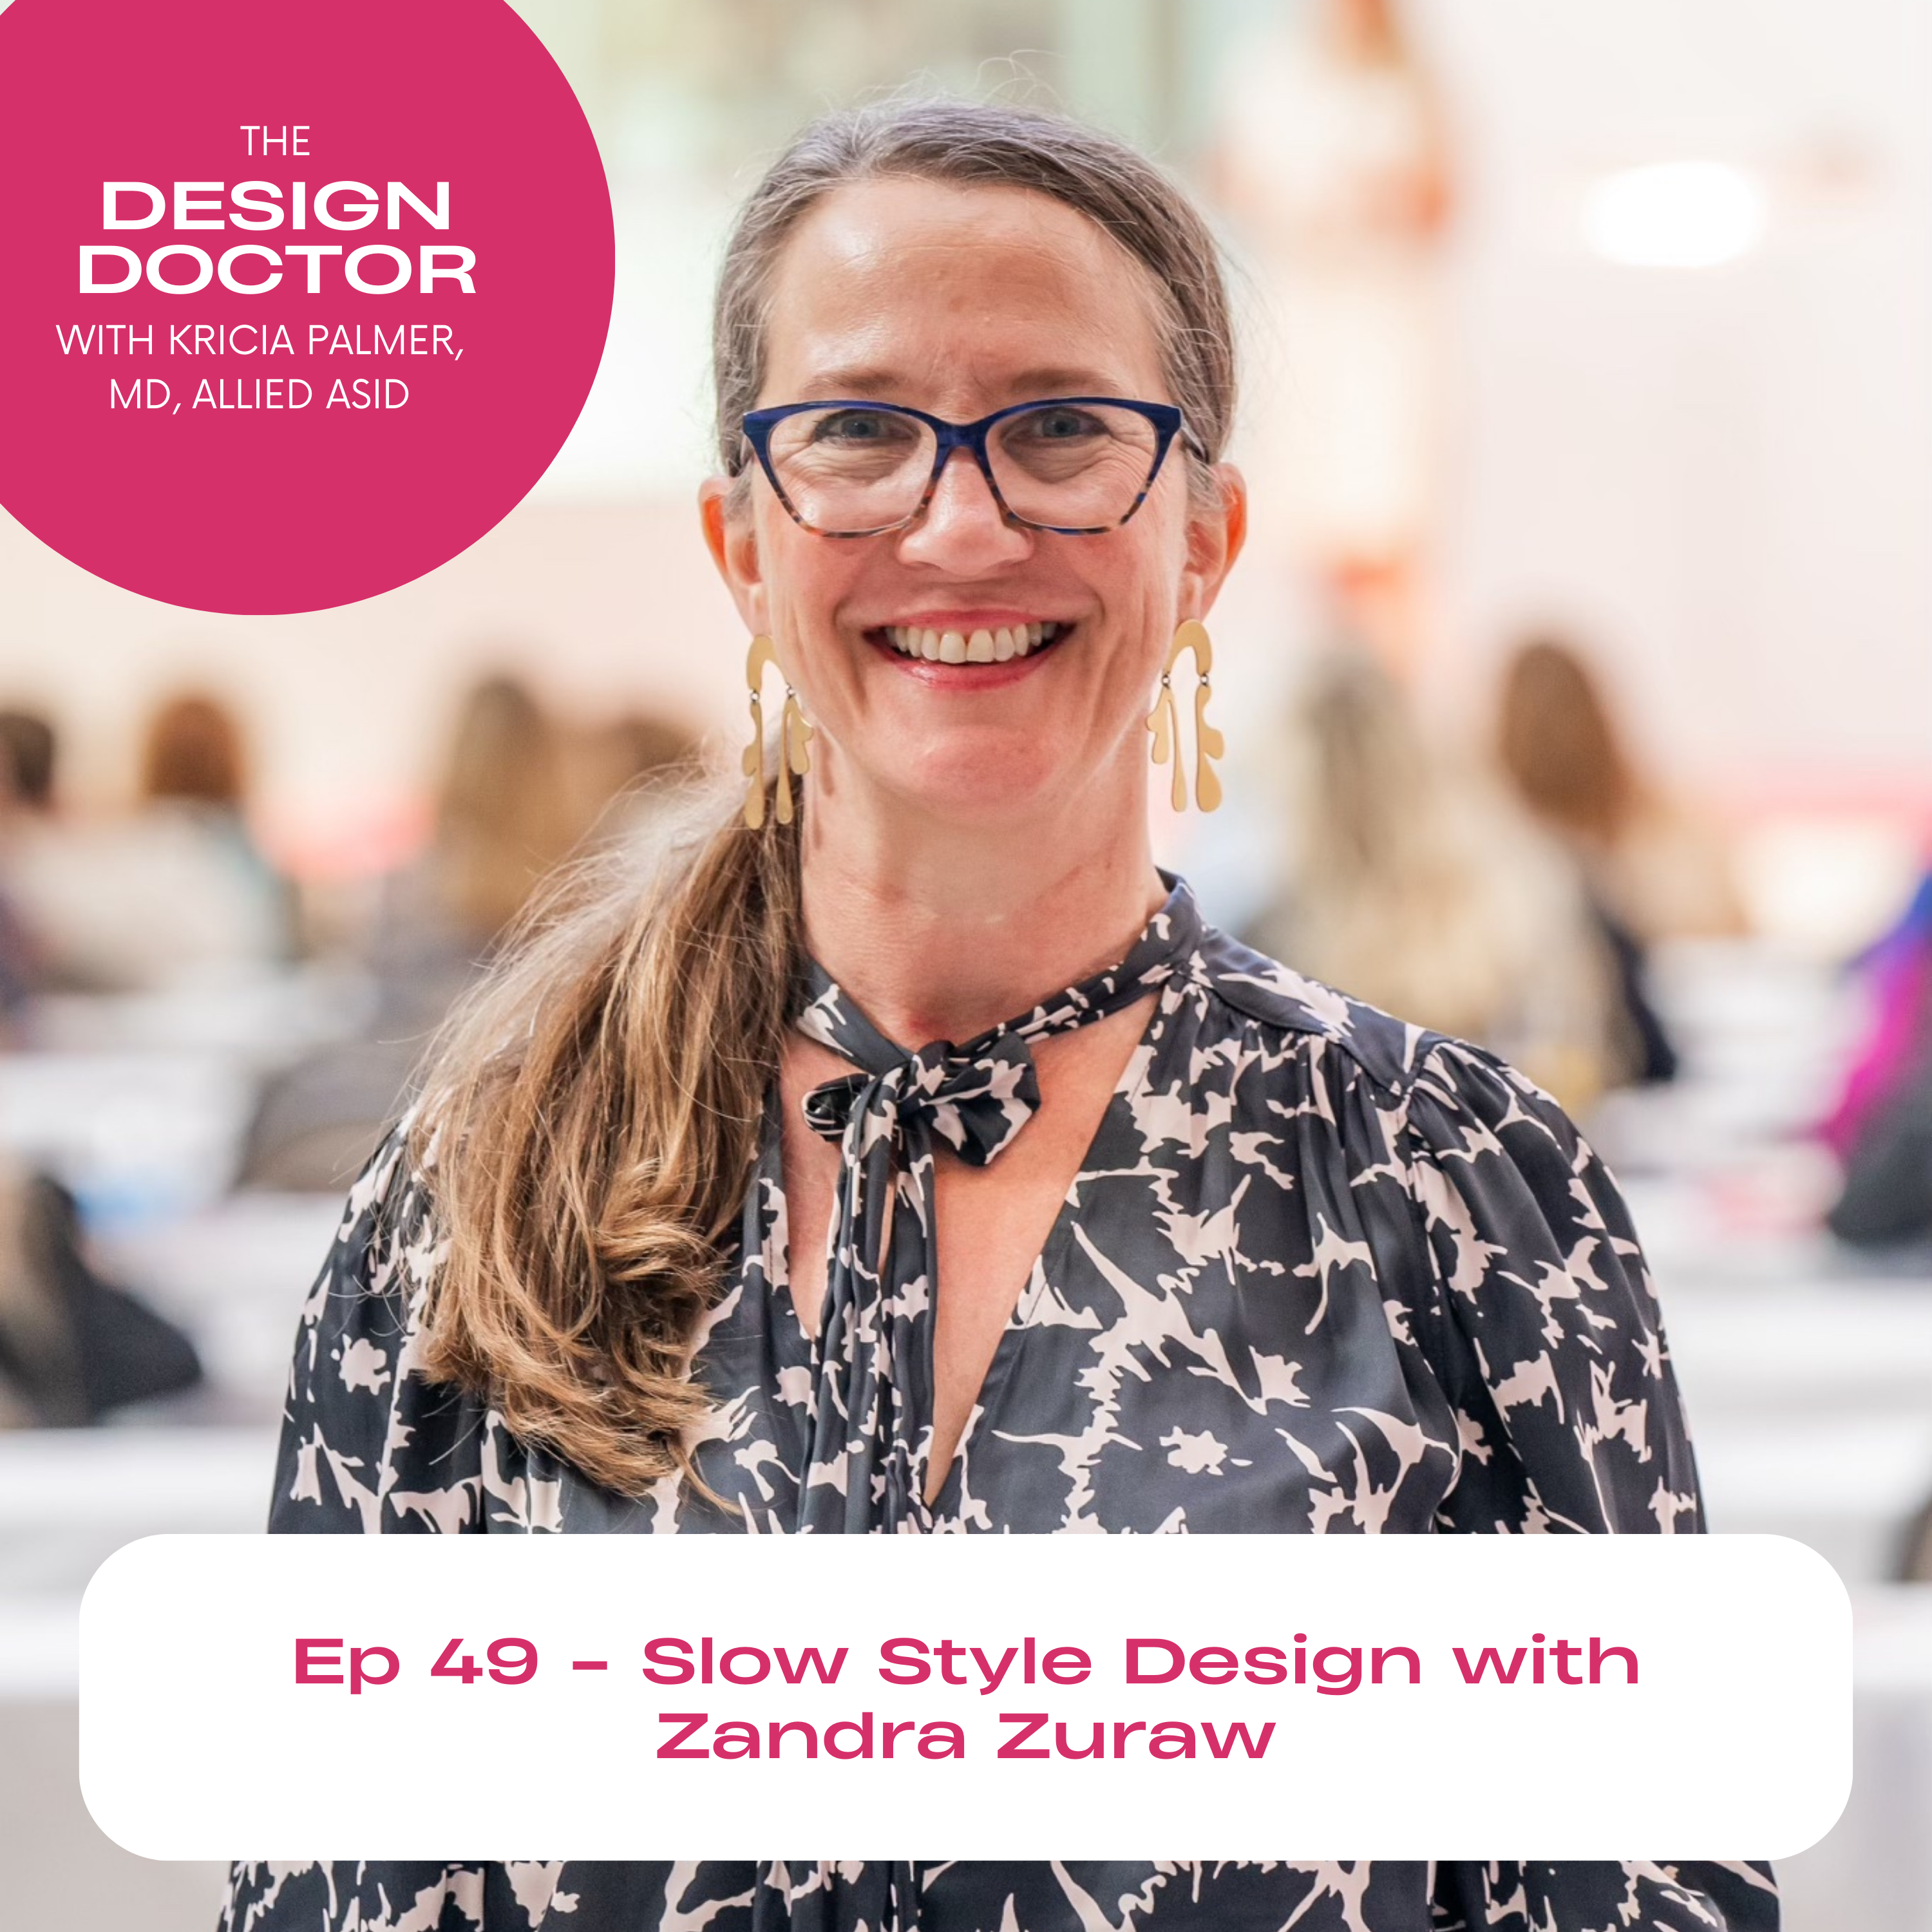 Episode 49 - Slow Style Design with Zandra Zuraw